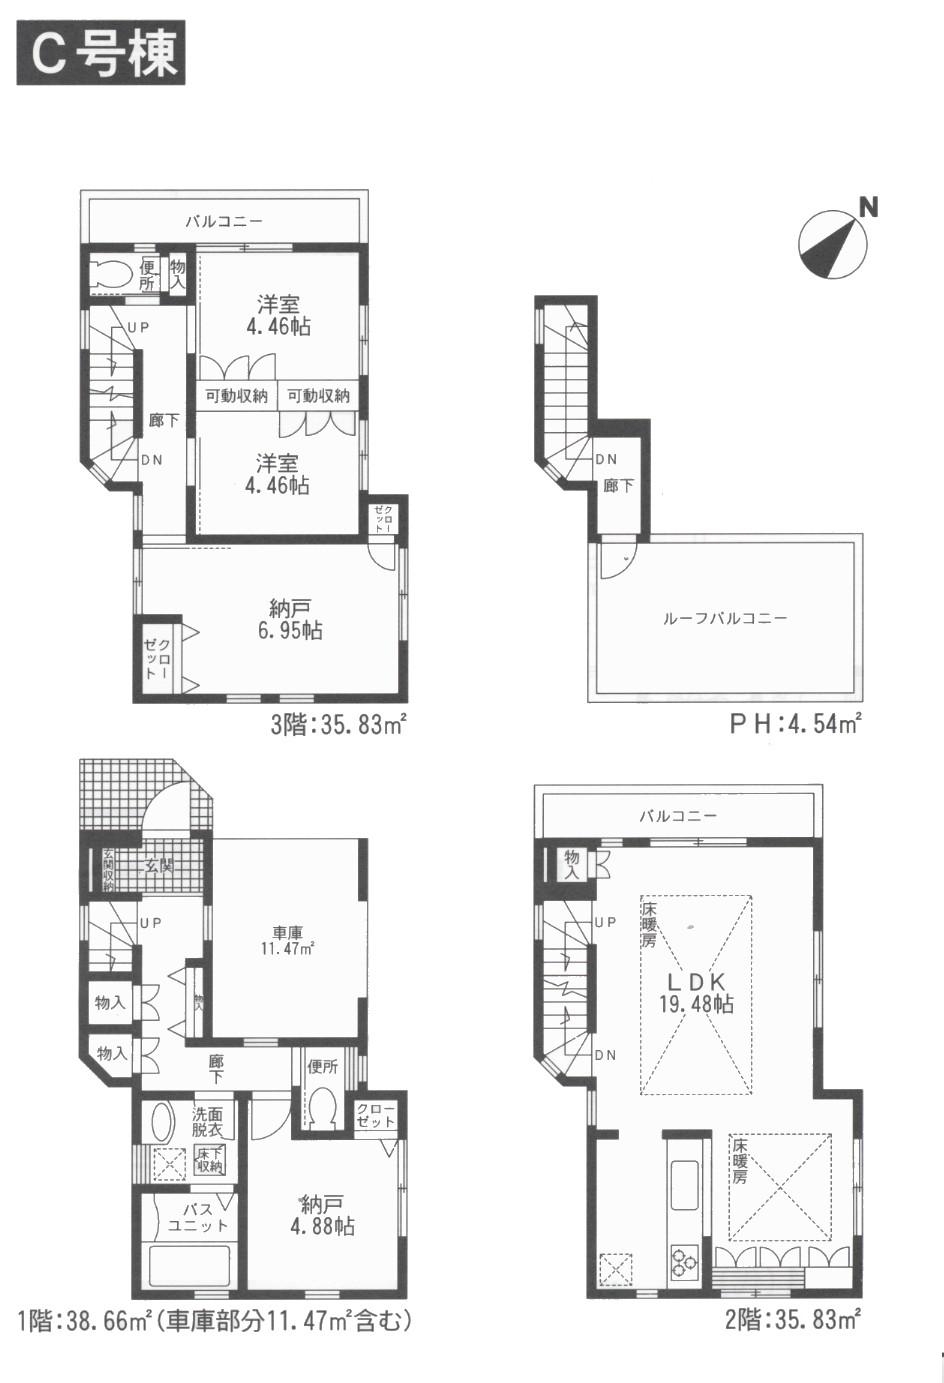 Floor plan. 36,350,000 yen, 2LDK + 2S (storeroom), Land area 60.87 sq m , Building area 114.86 sq m